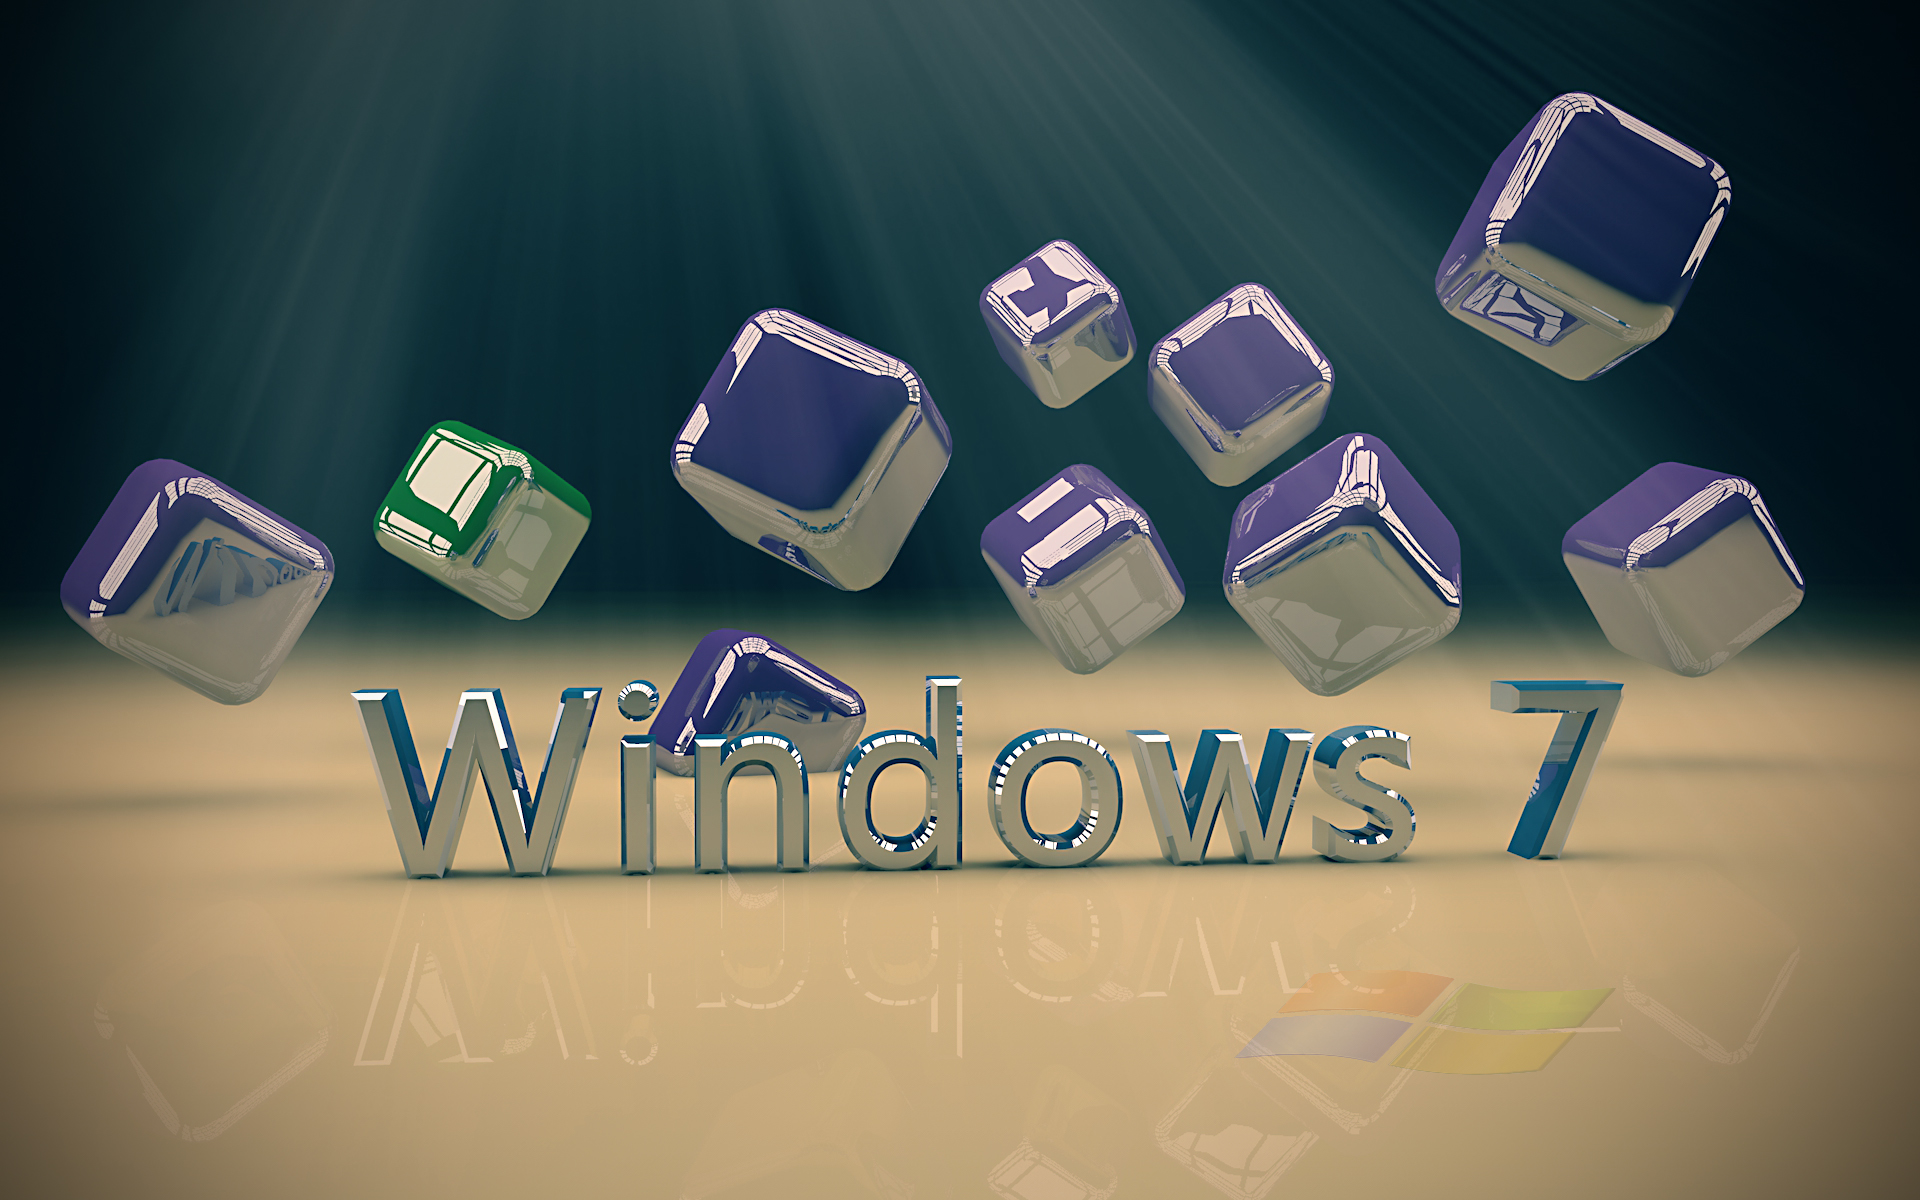 Công nghệ ngày càng phát triển, và hệ điều hành Windows 7 cũng không ngoại lệ. Với các hình nền công nghệ dành riêng cho Win 7, bạn sẽ được trải nghiệm những tác phẩm nghệ thuật độc đáo, ấn tượng và thể hiện rõ sự phát triển của CNTT. Hãy truy cập vào ảnh để tìm kiếm hình nền công nghệ cho máy tính Windows 7 của bạn.